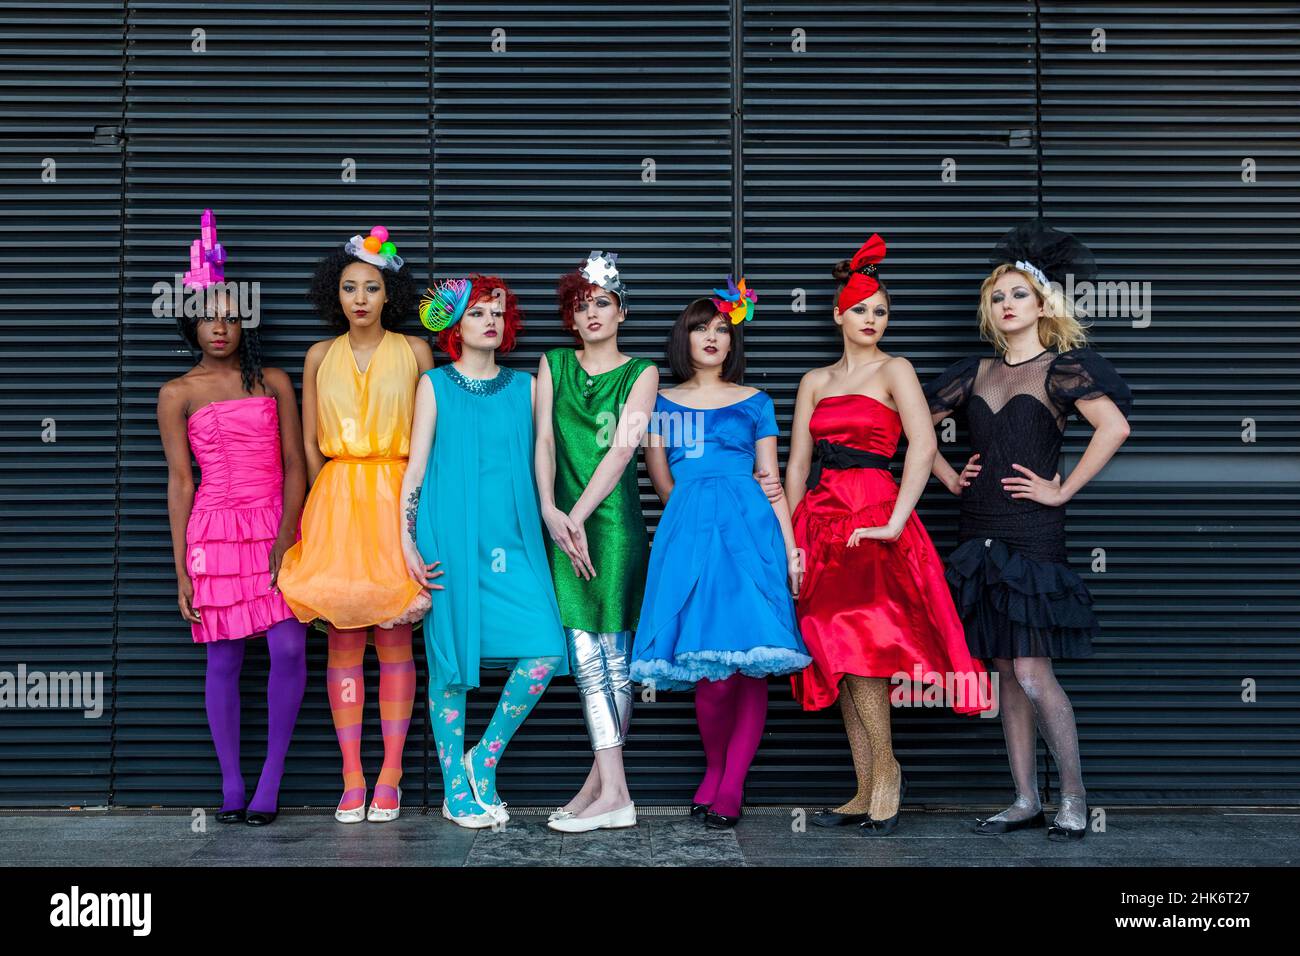 Gruppo di modelli con abiti colorati, settimana della moda alternativa allo Spitalfields Market, Londra Foto Stock